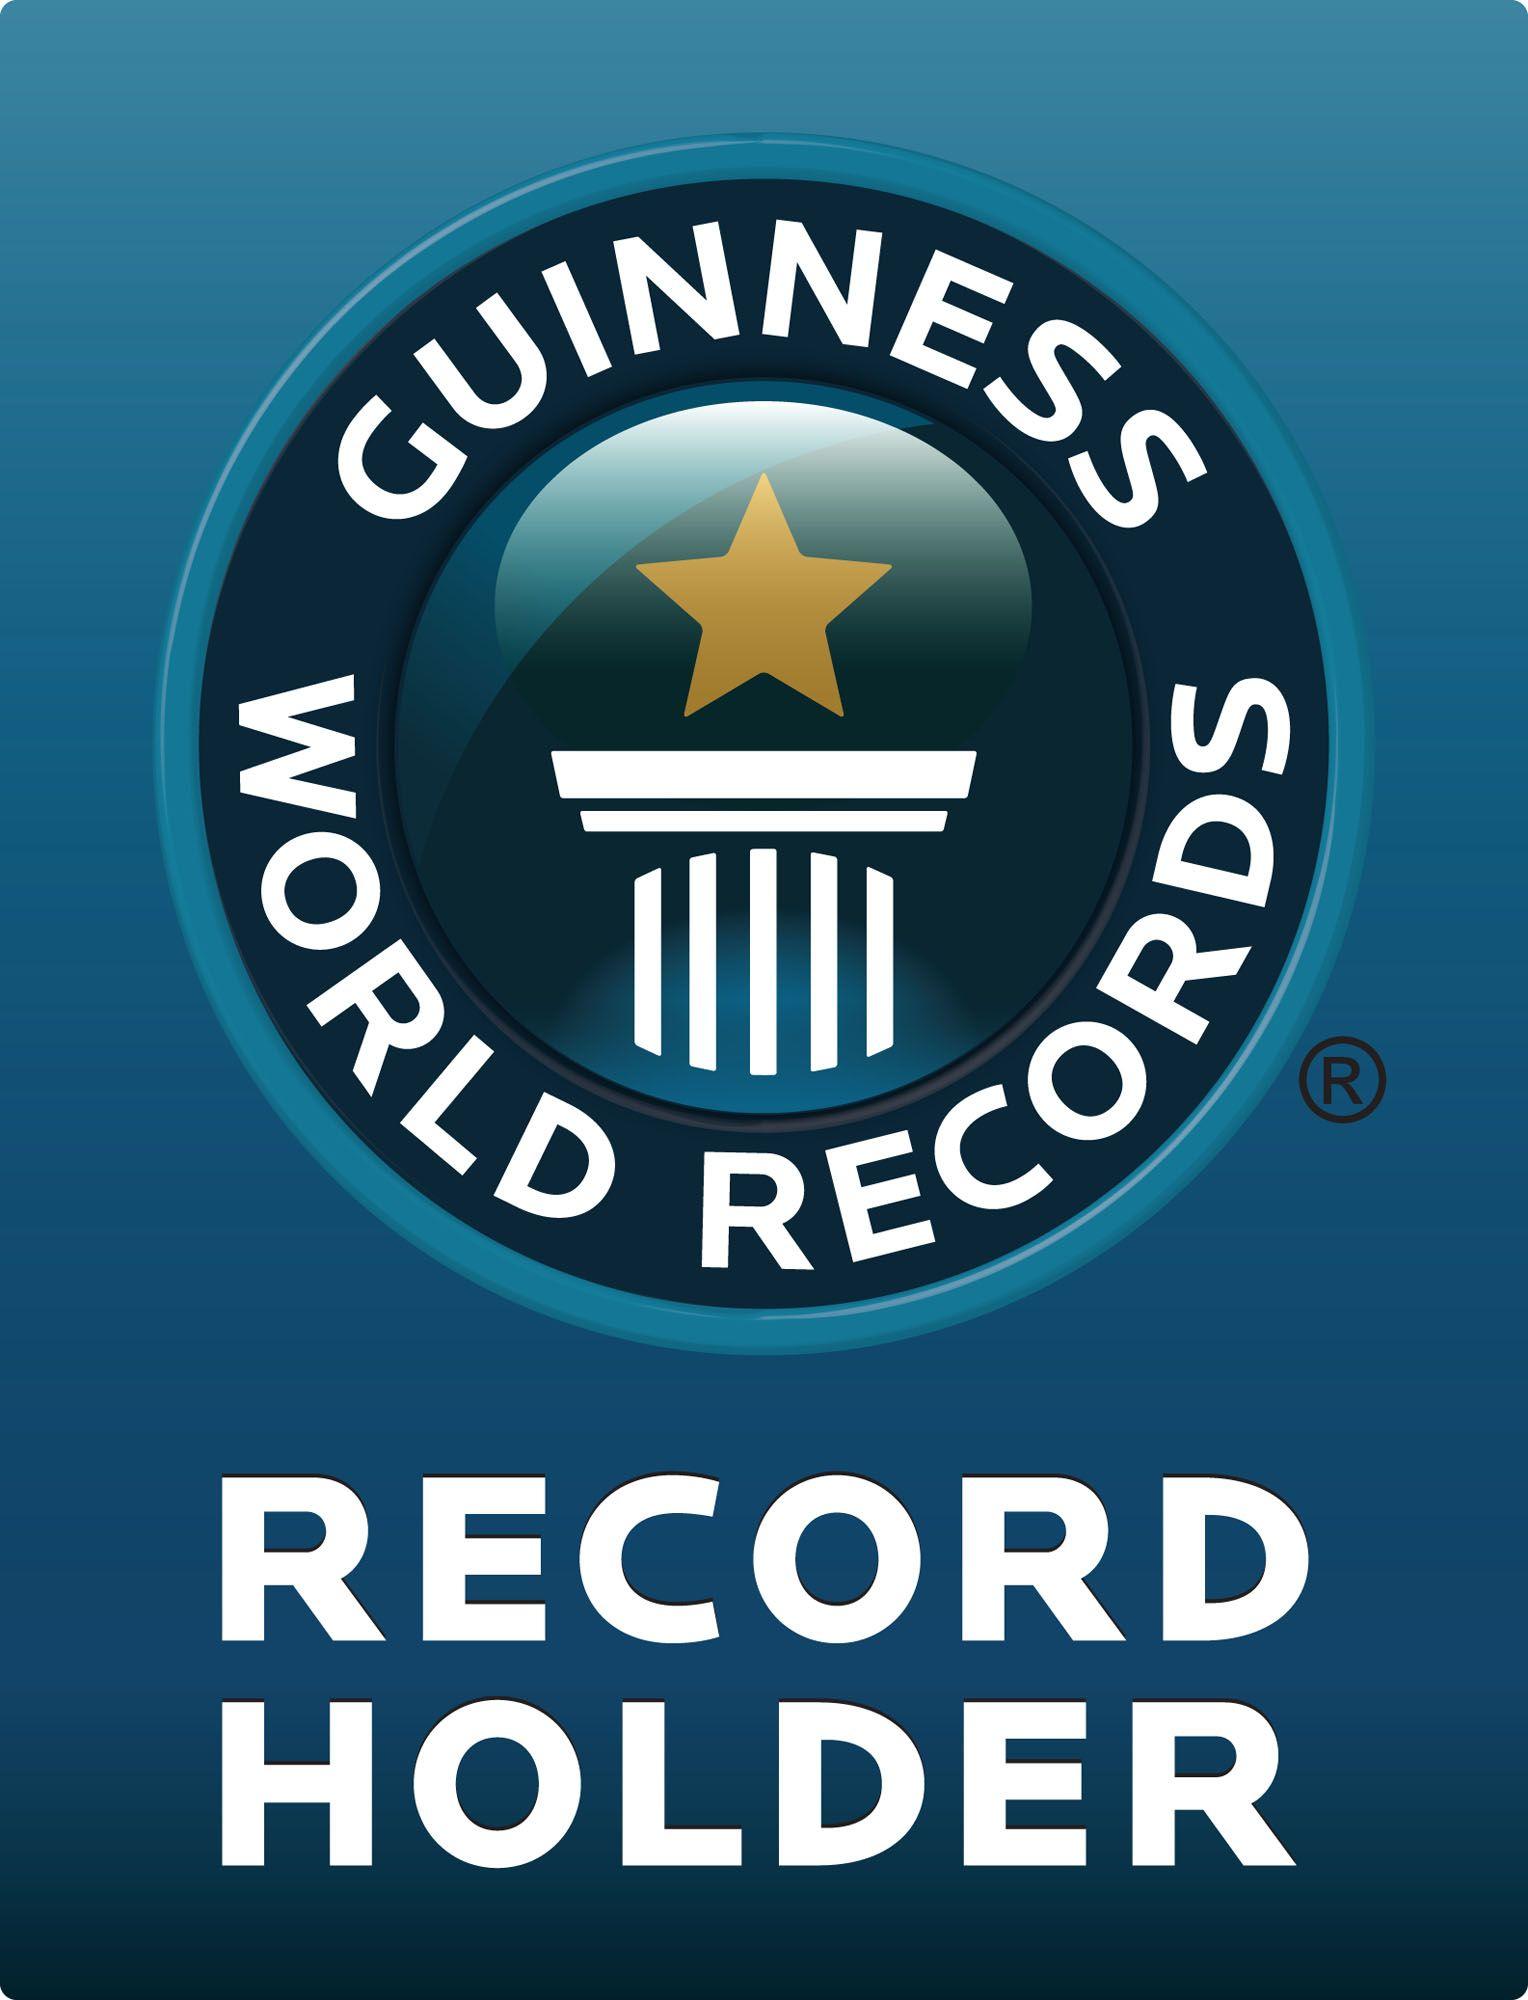 Guinness Book of World Records Logo - LIFE Leadership Breaks Guinness World Record!